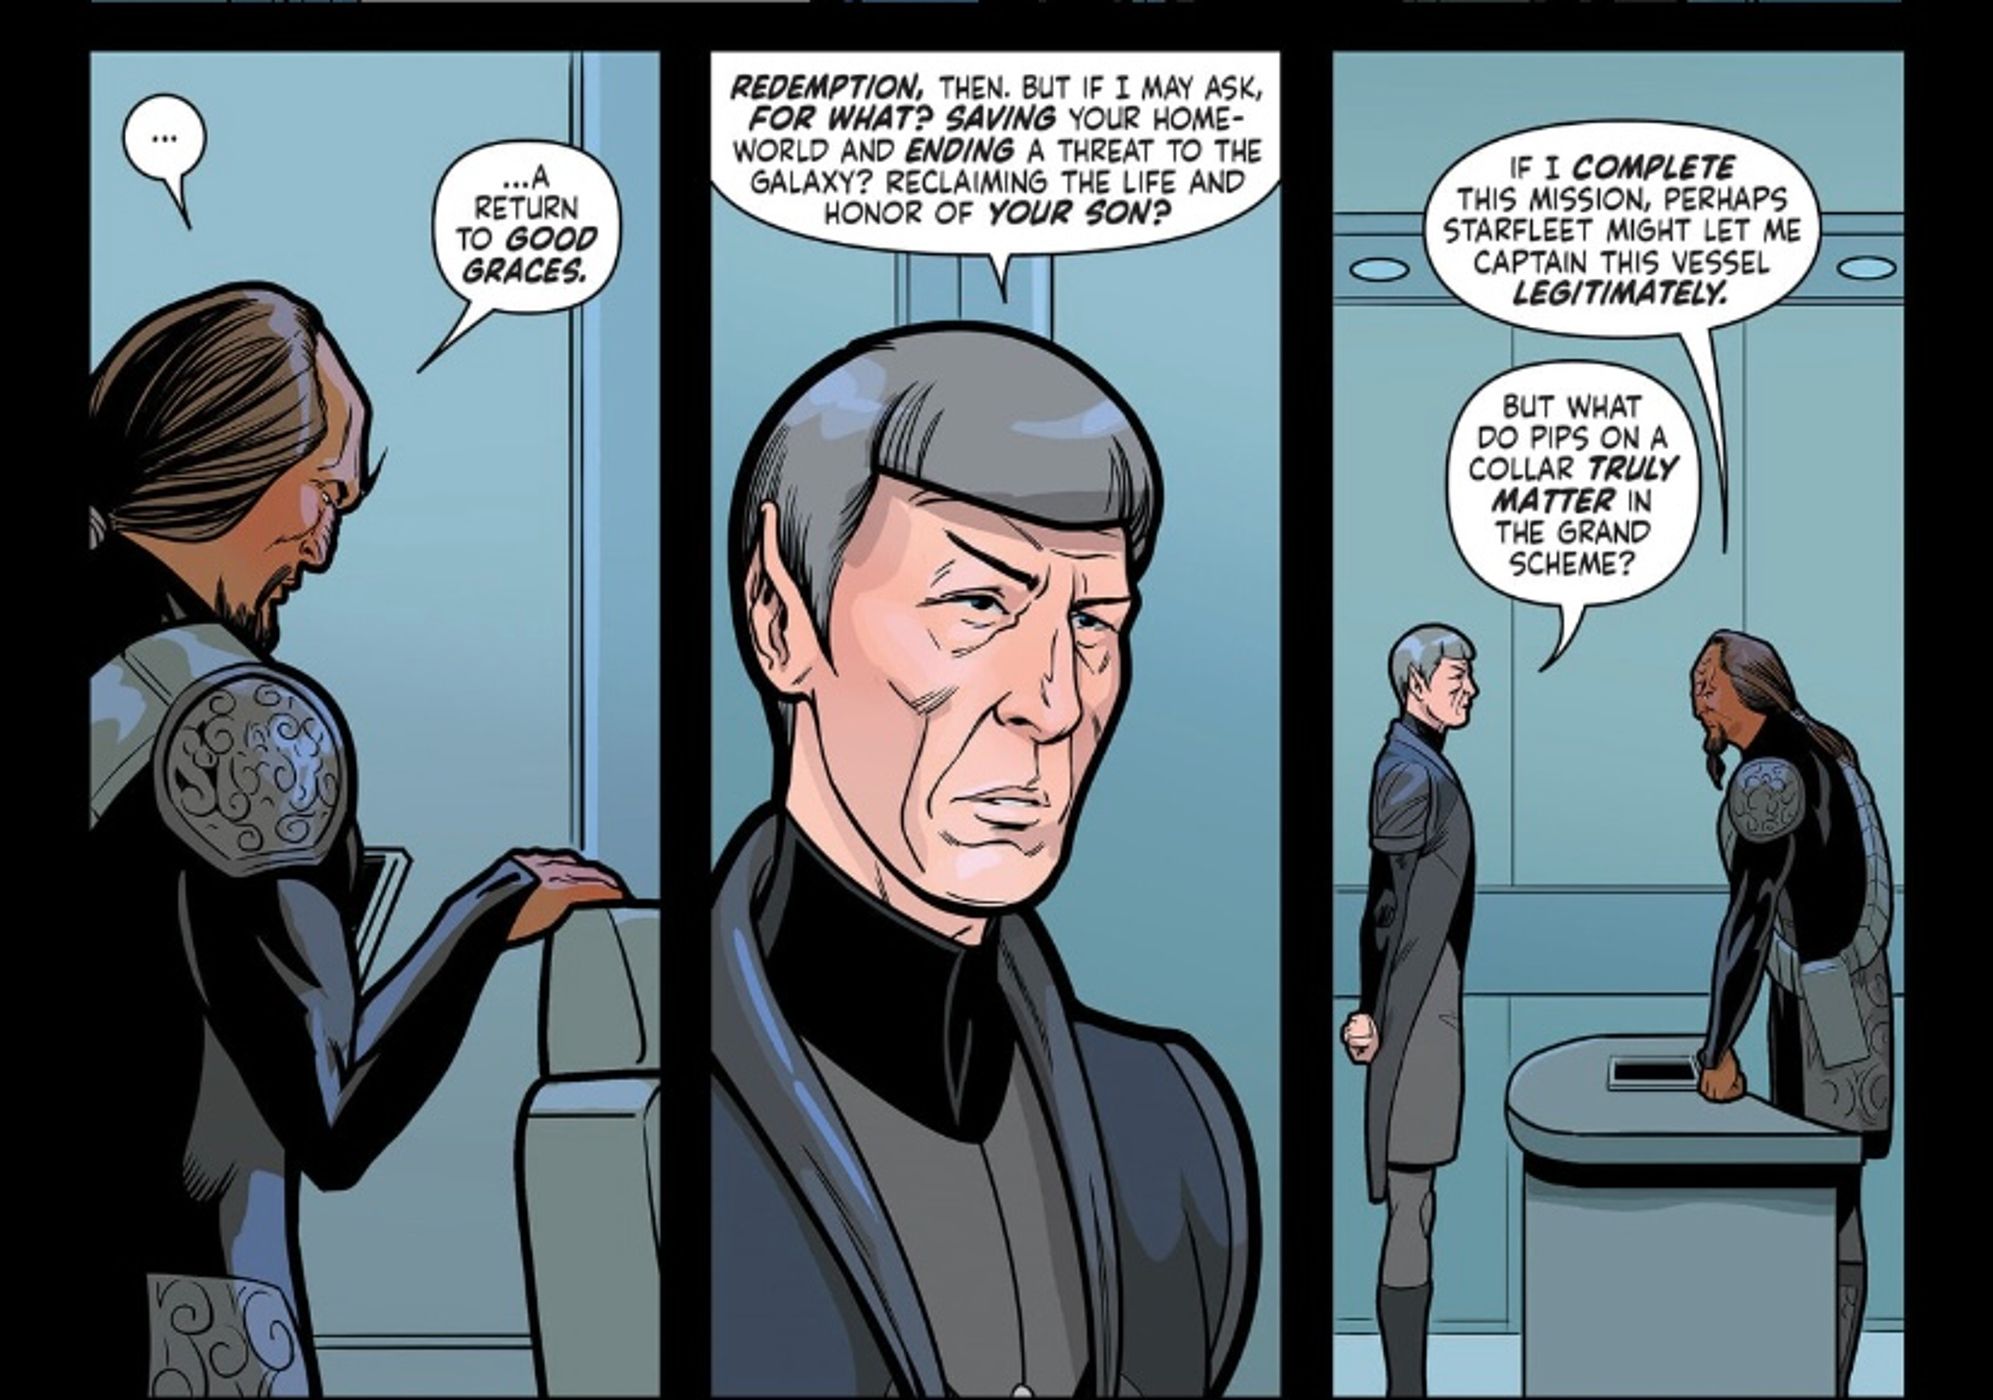 Spock le pregunta a Worf: 